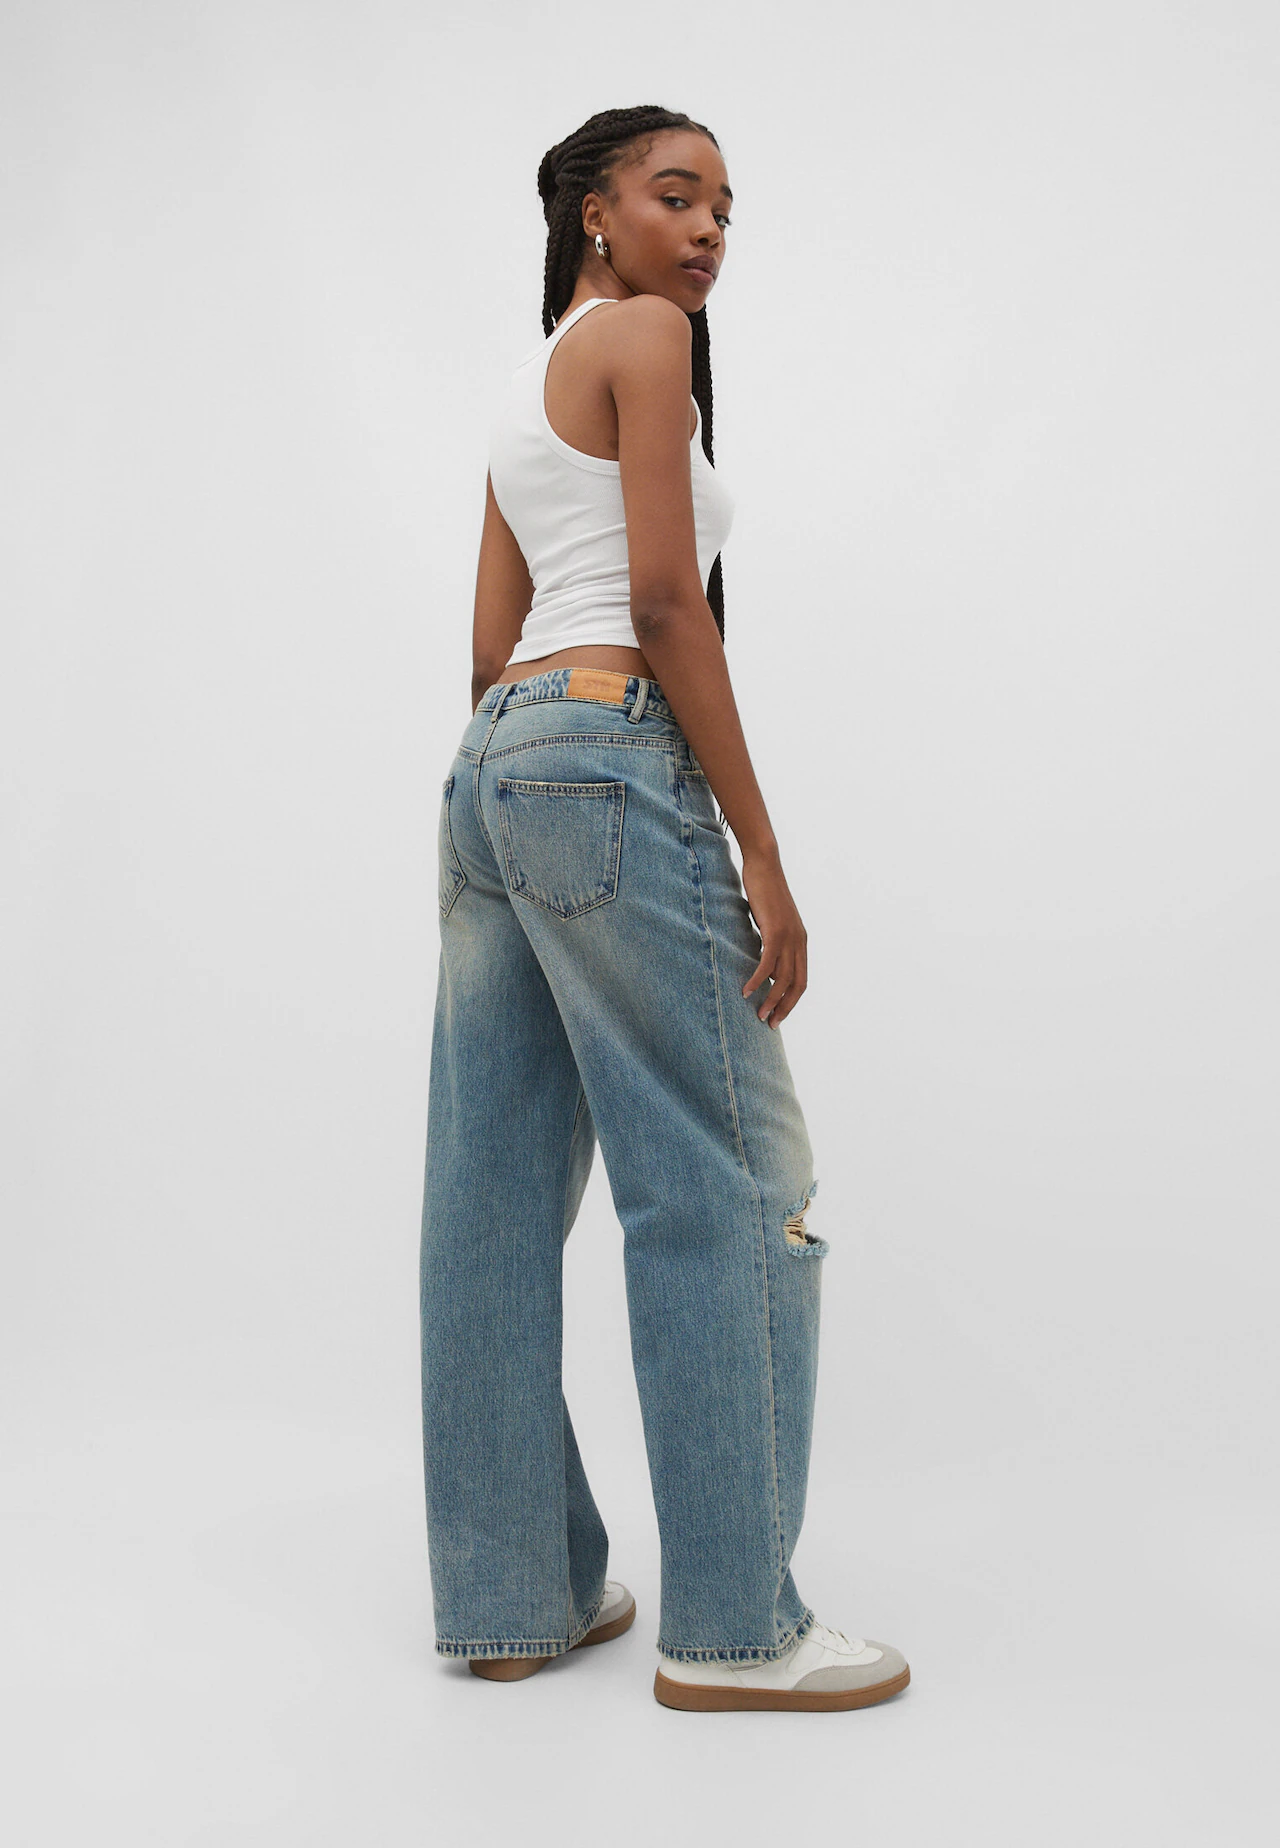 Wide-leg low-waist jeans - Women's fashion